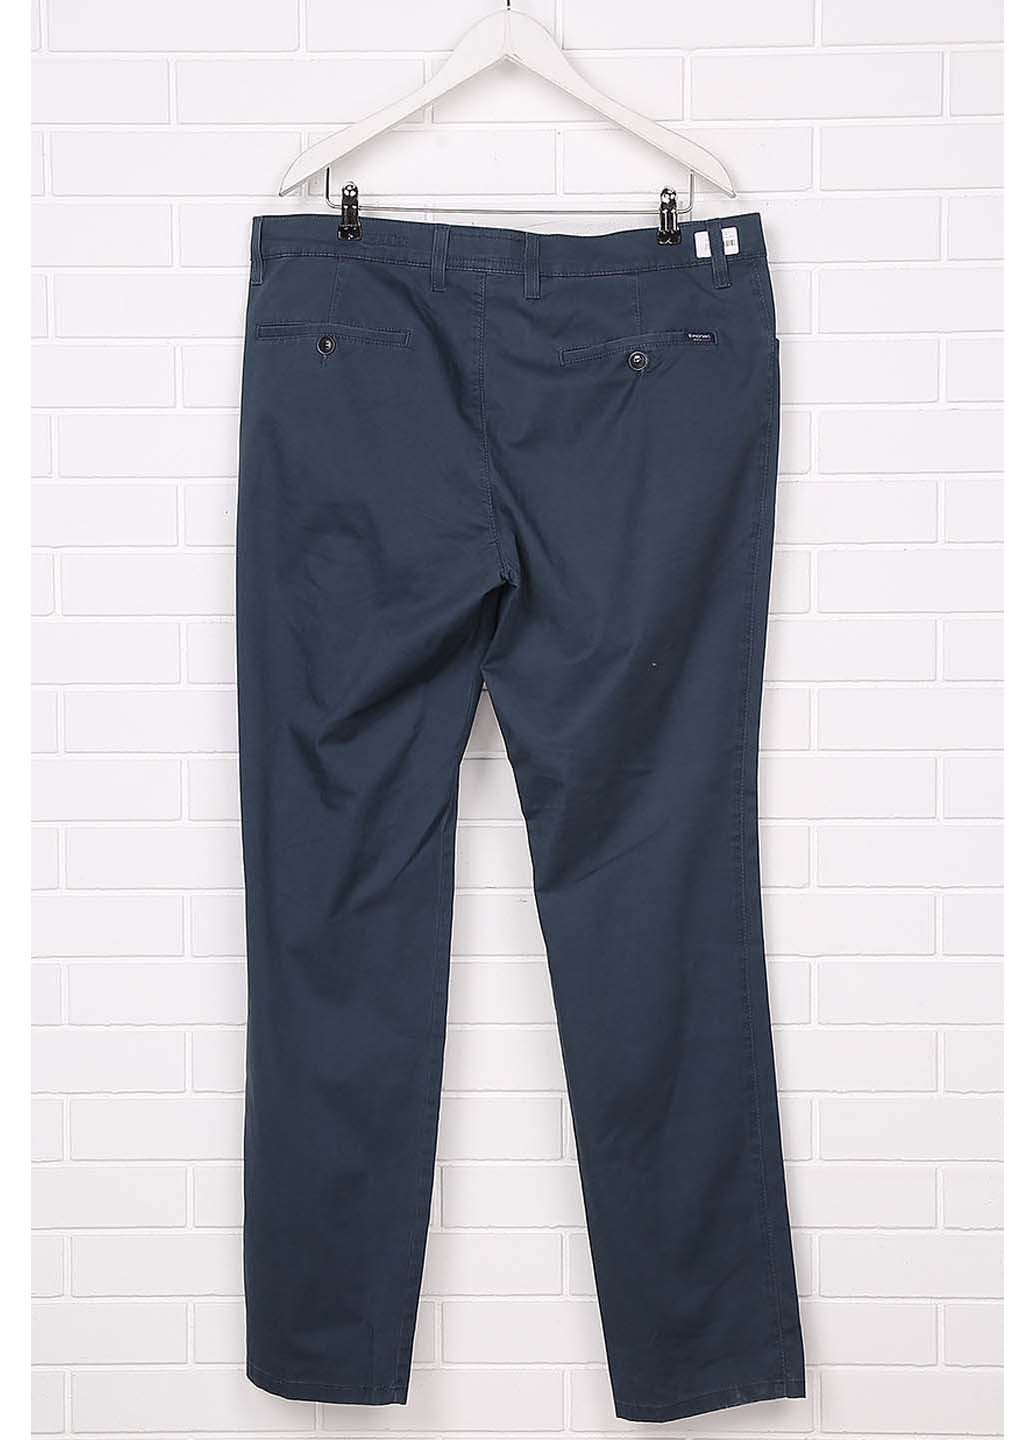 Комбинированные демисезонные джинсы Pioneer